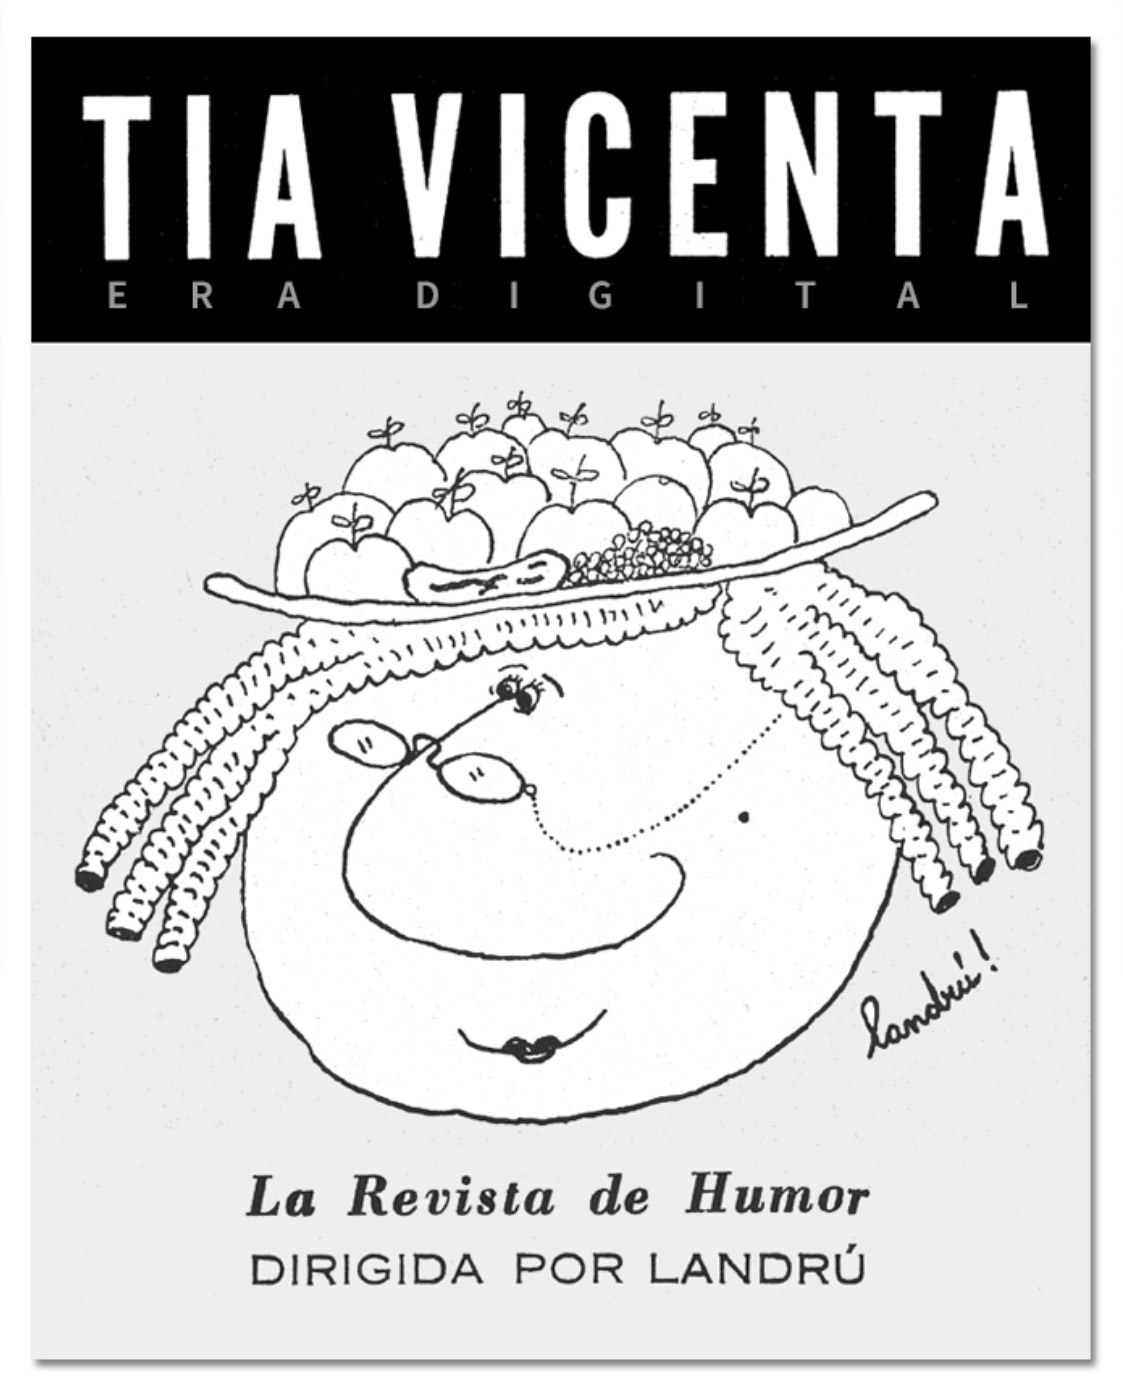 dibujo de tía vicenta con formato de revista antigua, y titulares de era digital, la revista de humor dirigida por landrú